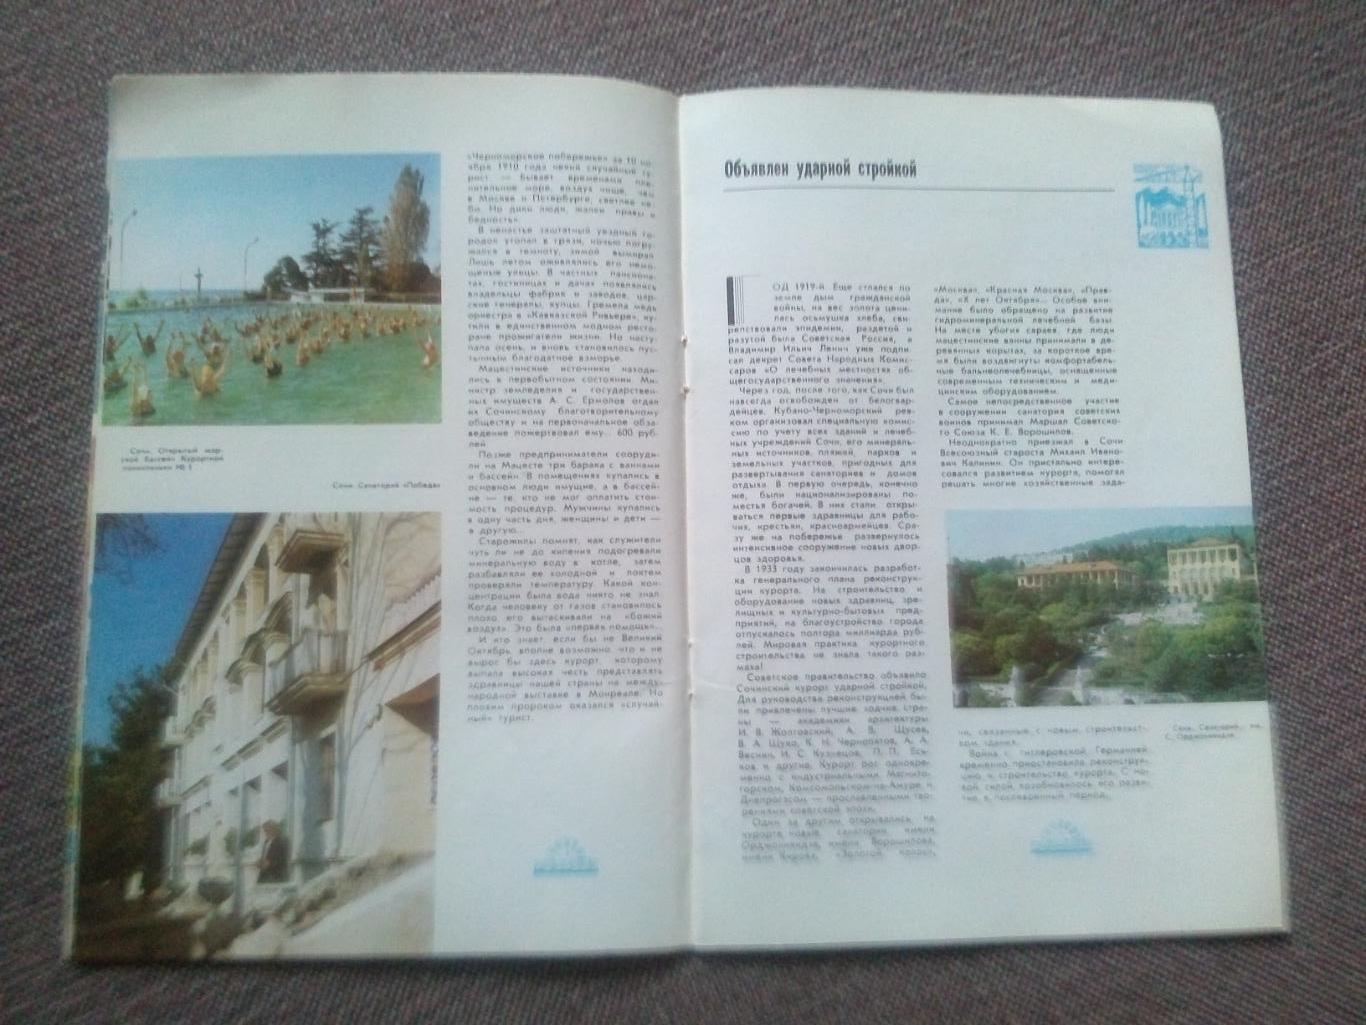 Путеводитель : Распахнутый Солнцу - Курорт Сочи 1986 г. Черноморское побережье 4